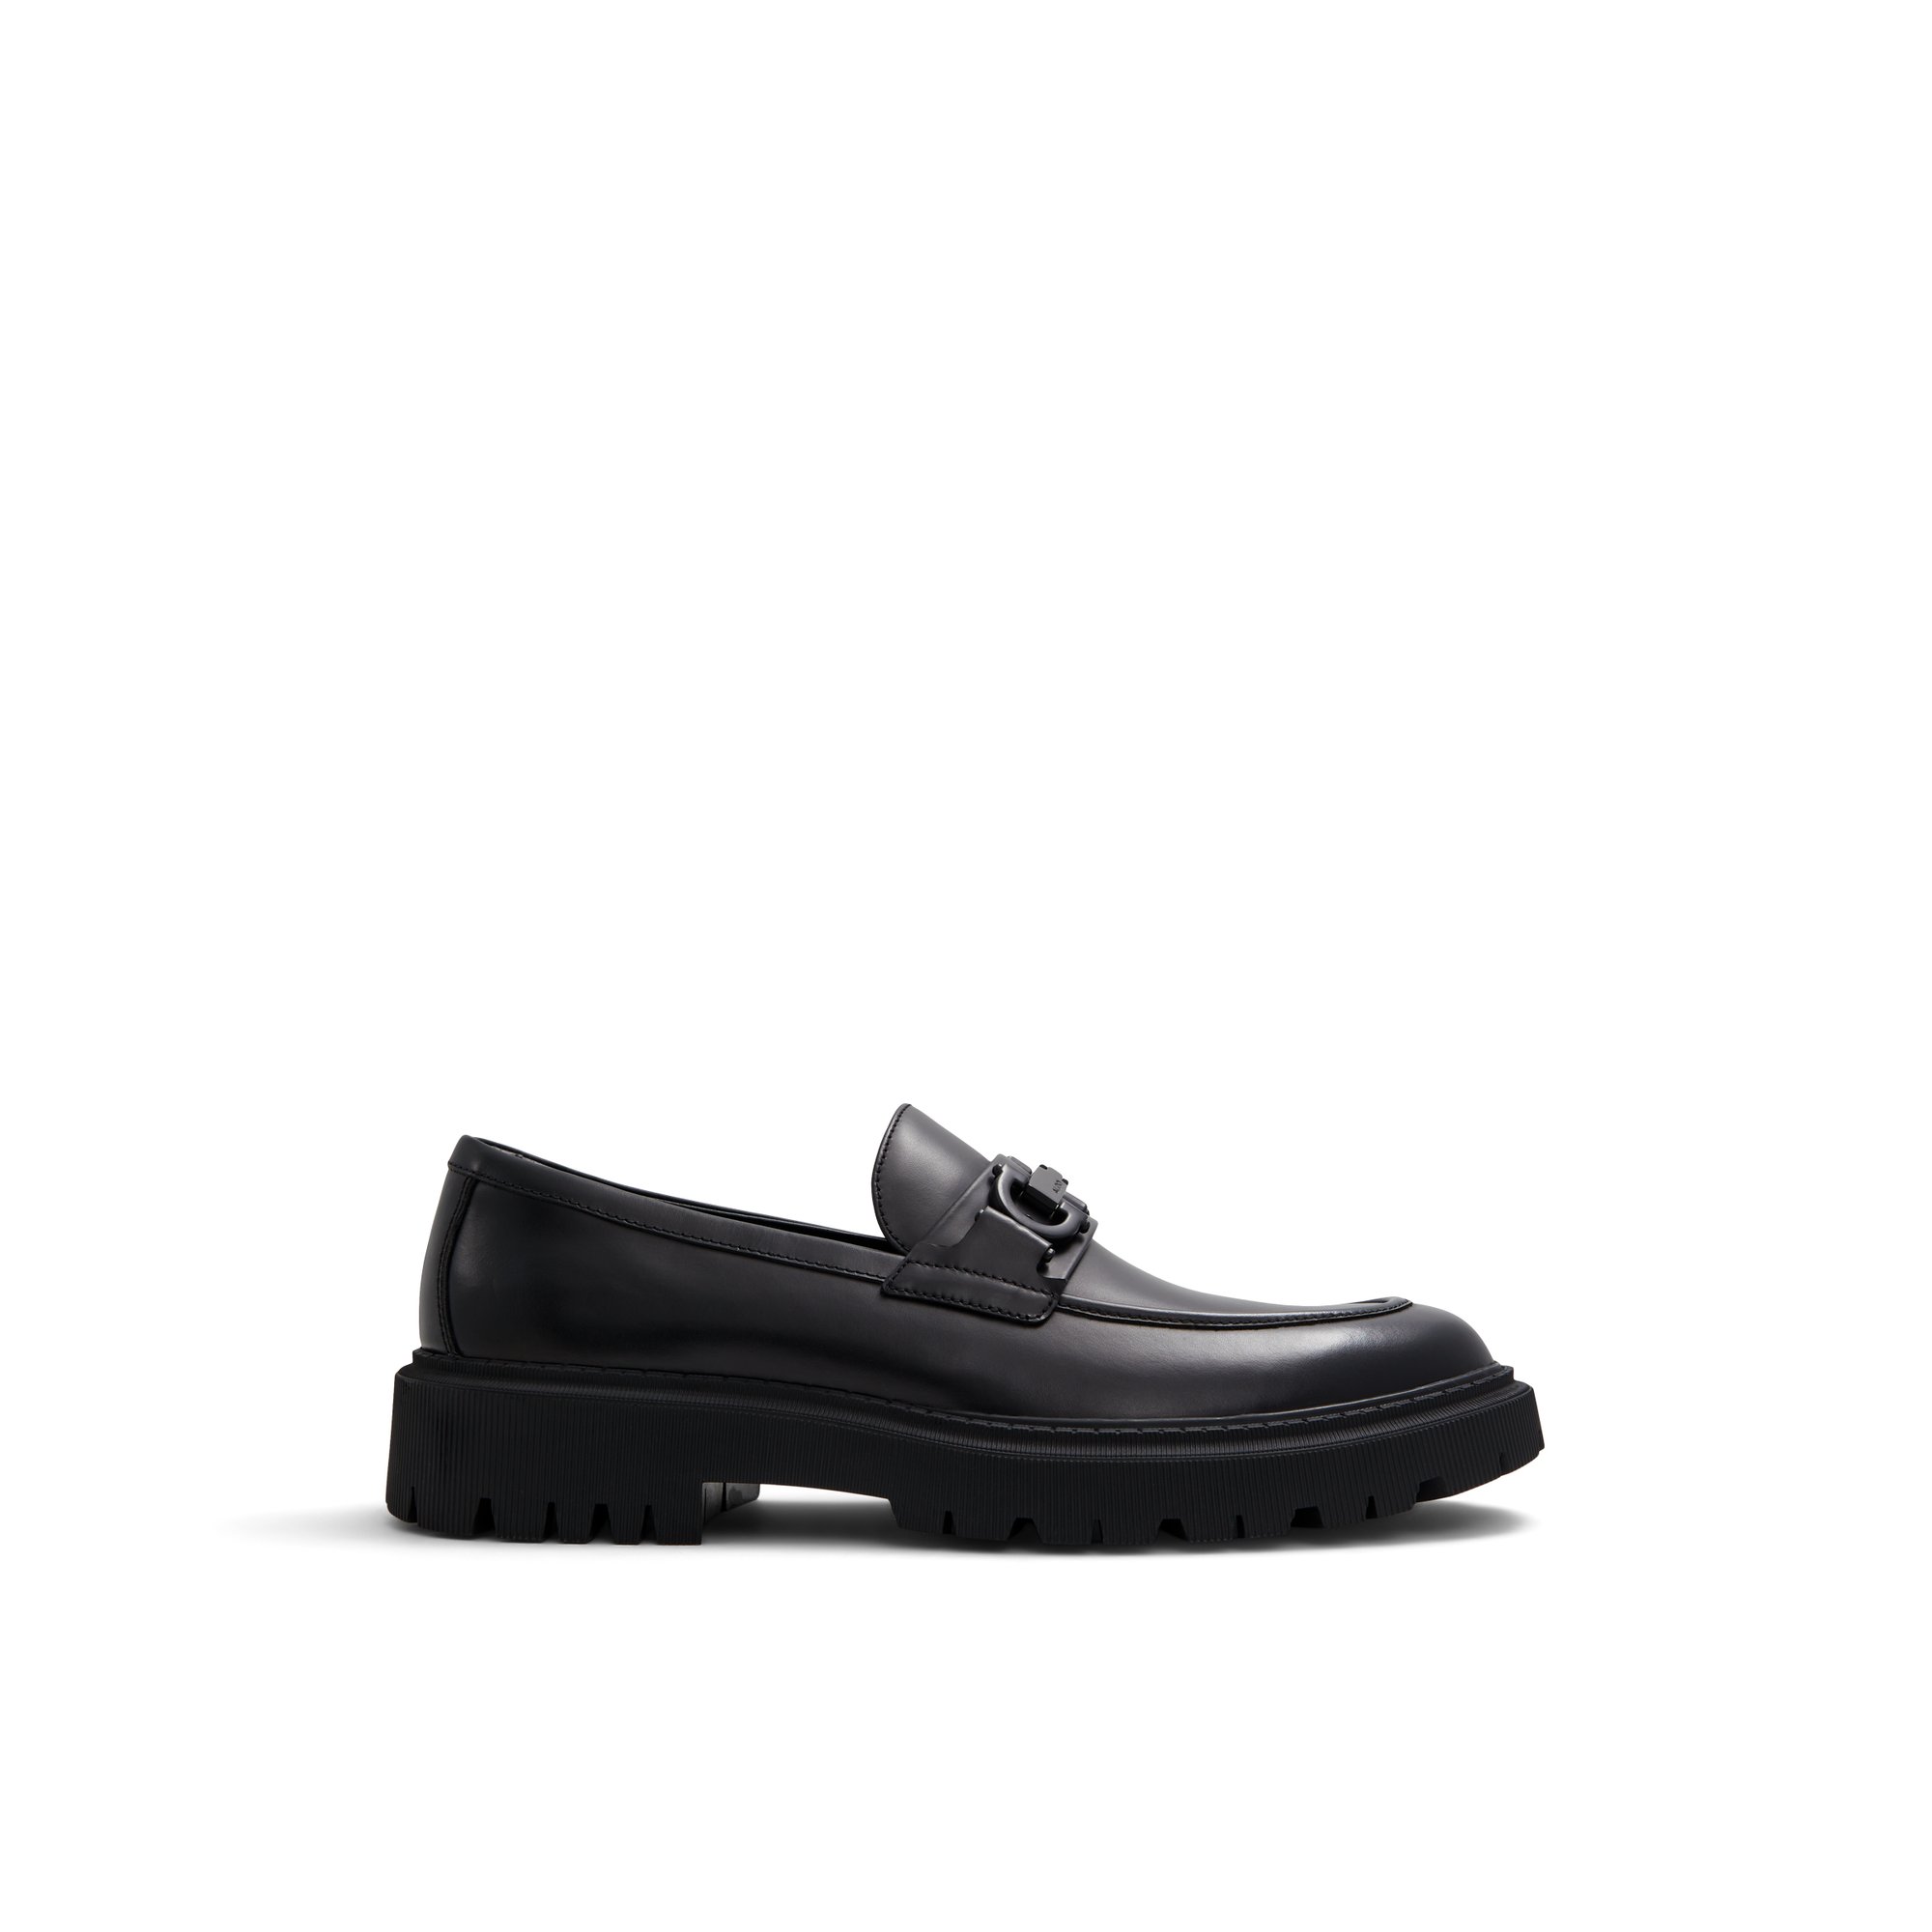 ALDO Fairford - Men's Loafers and Slip on - Black